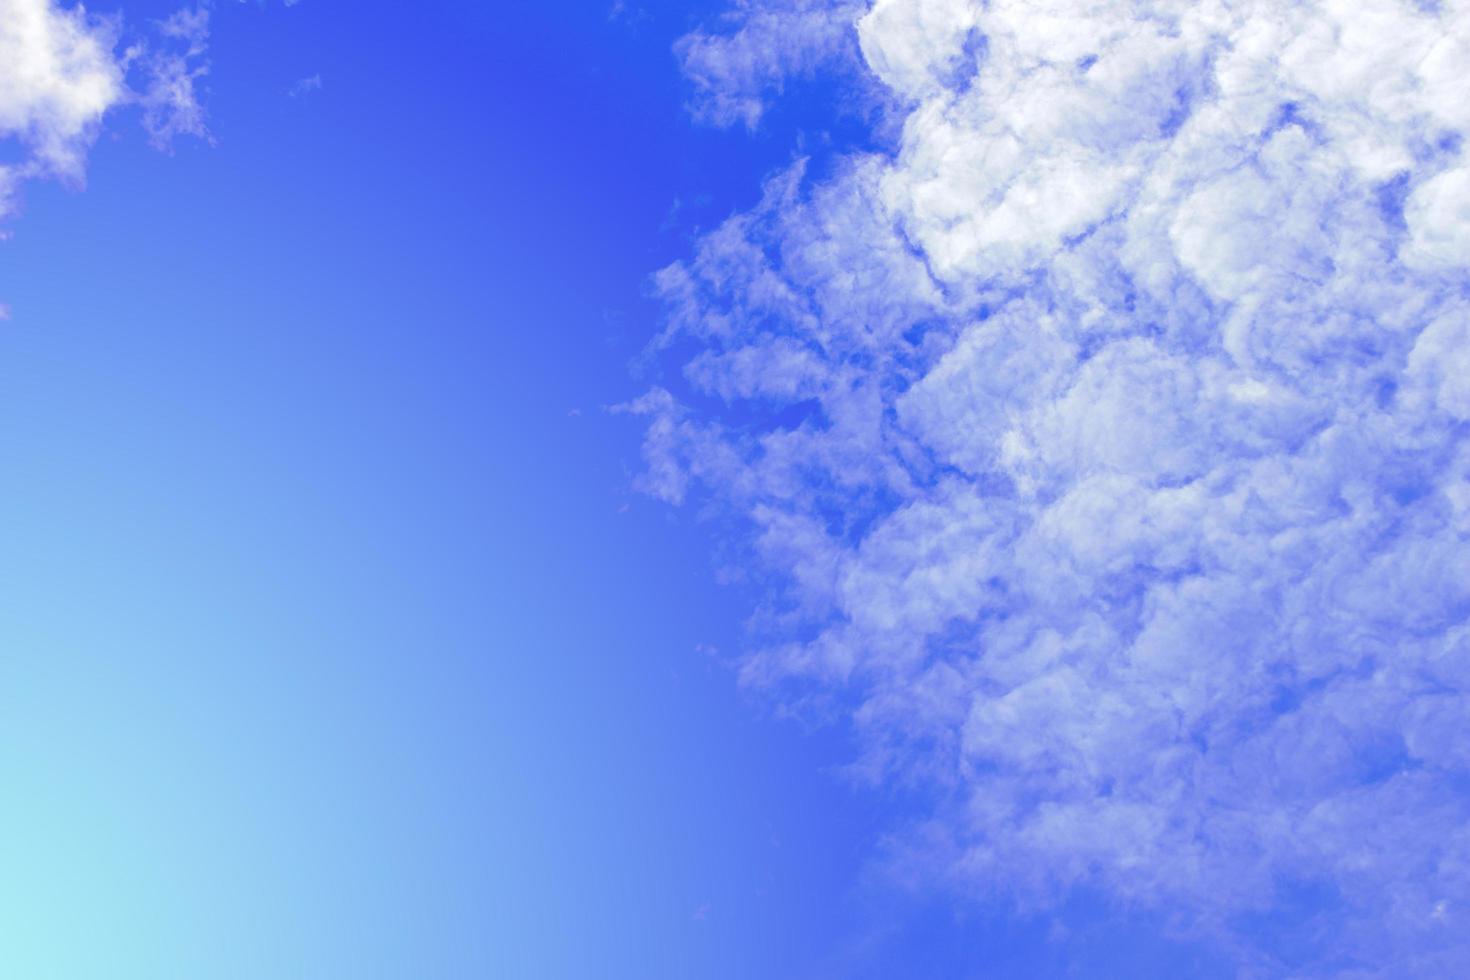 blauer Himmel mit Wolkenhintergrund foto